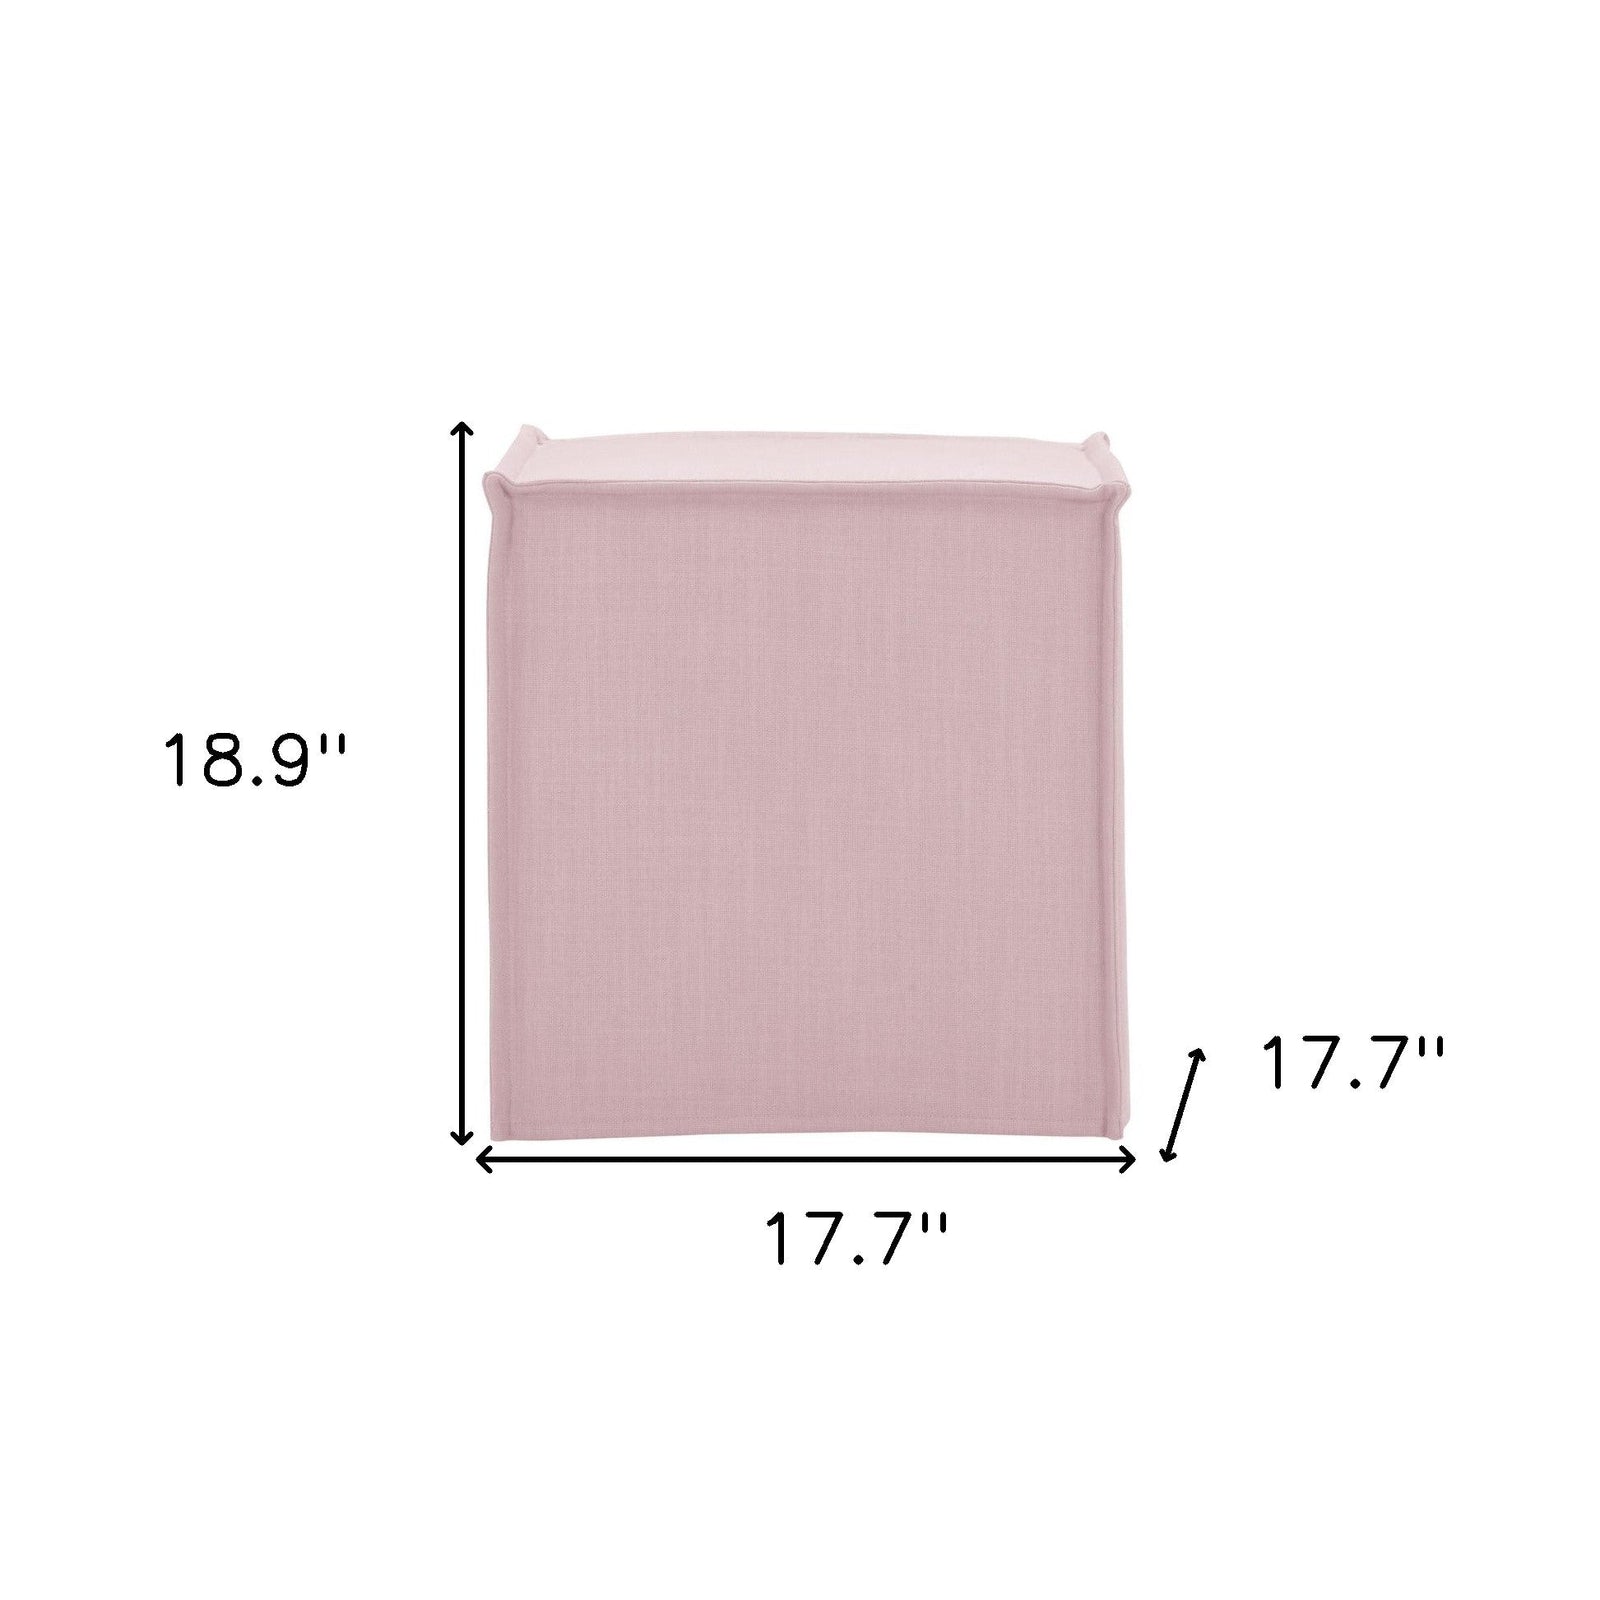 18" Light Pink 100% Linen Cube Ottoman